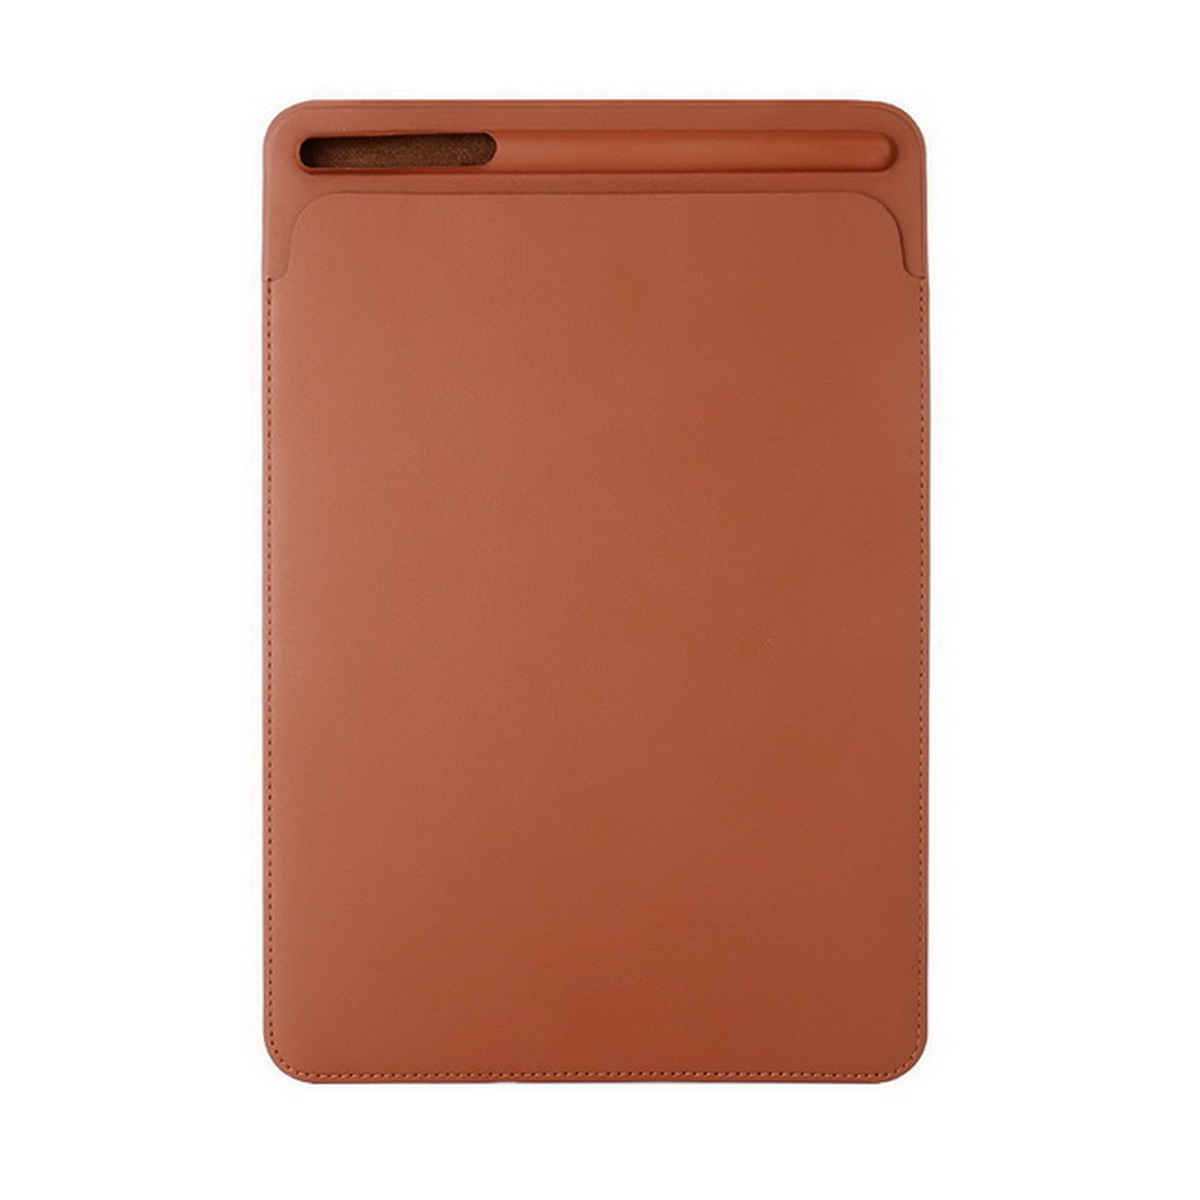 Lumi เคสสำหรับ iPad Pro (12.9",สีน้ำตาล) รุ่น CAS-TK110